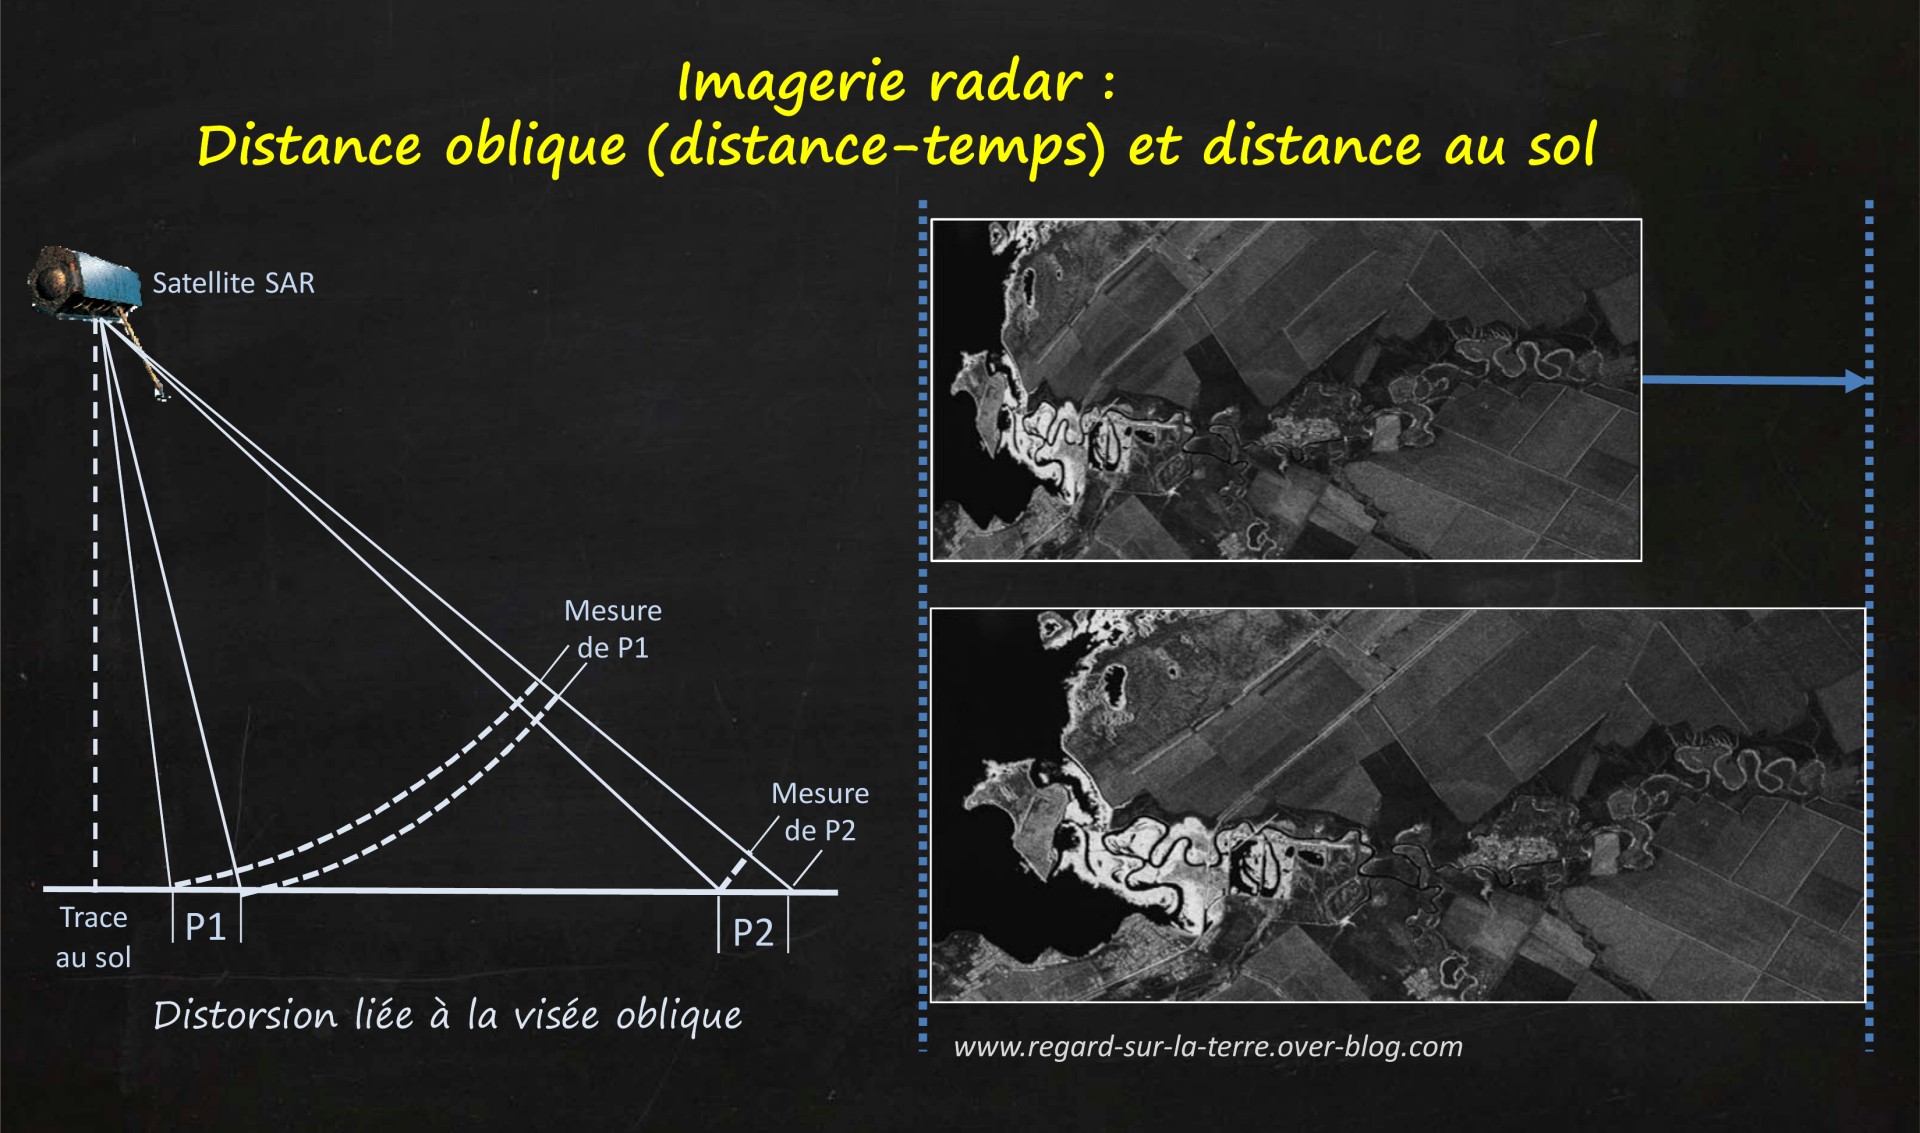 Satellite - Radar - SAR - Synthetic Aperture radar - Visée oblique - Slant range - Géométrie - Portée - Azimut - Distorsion - distance oblique - distance au sol